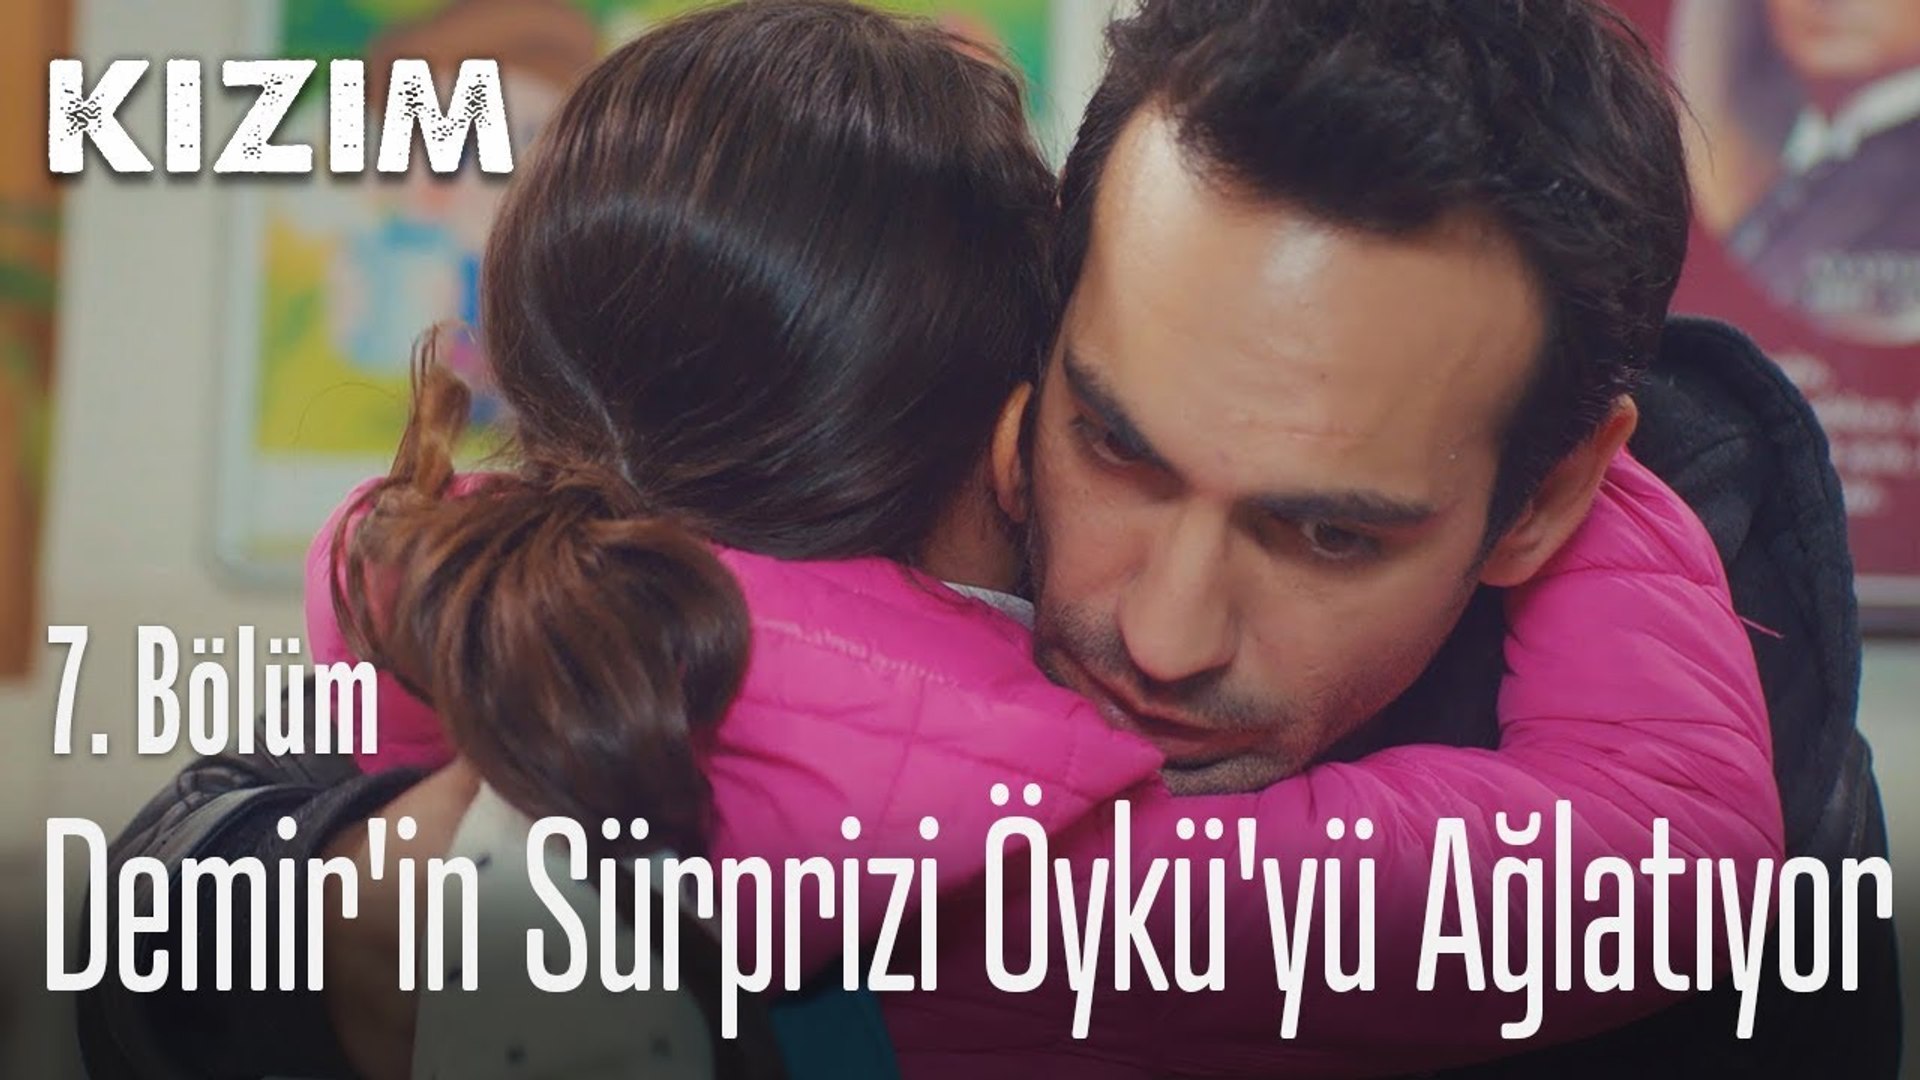 Demir'in sürprizi Öykü'yü ağlatıyor - Kızım 7. Bölüm - Dailymotion Video